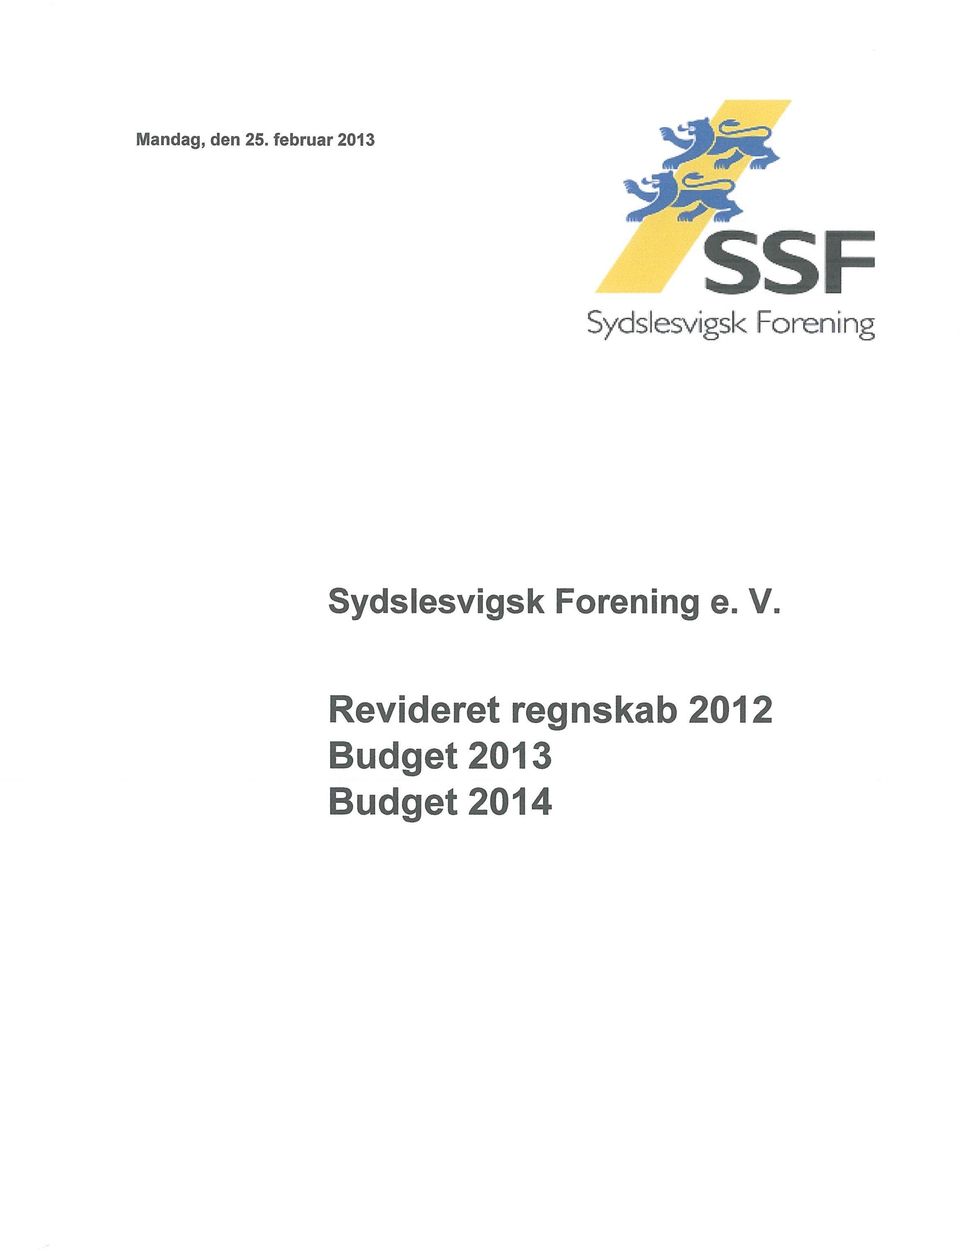 Forening Sydslesvigsk Forening e.